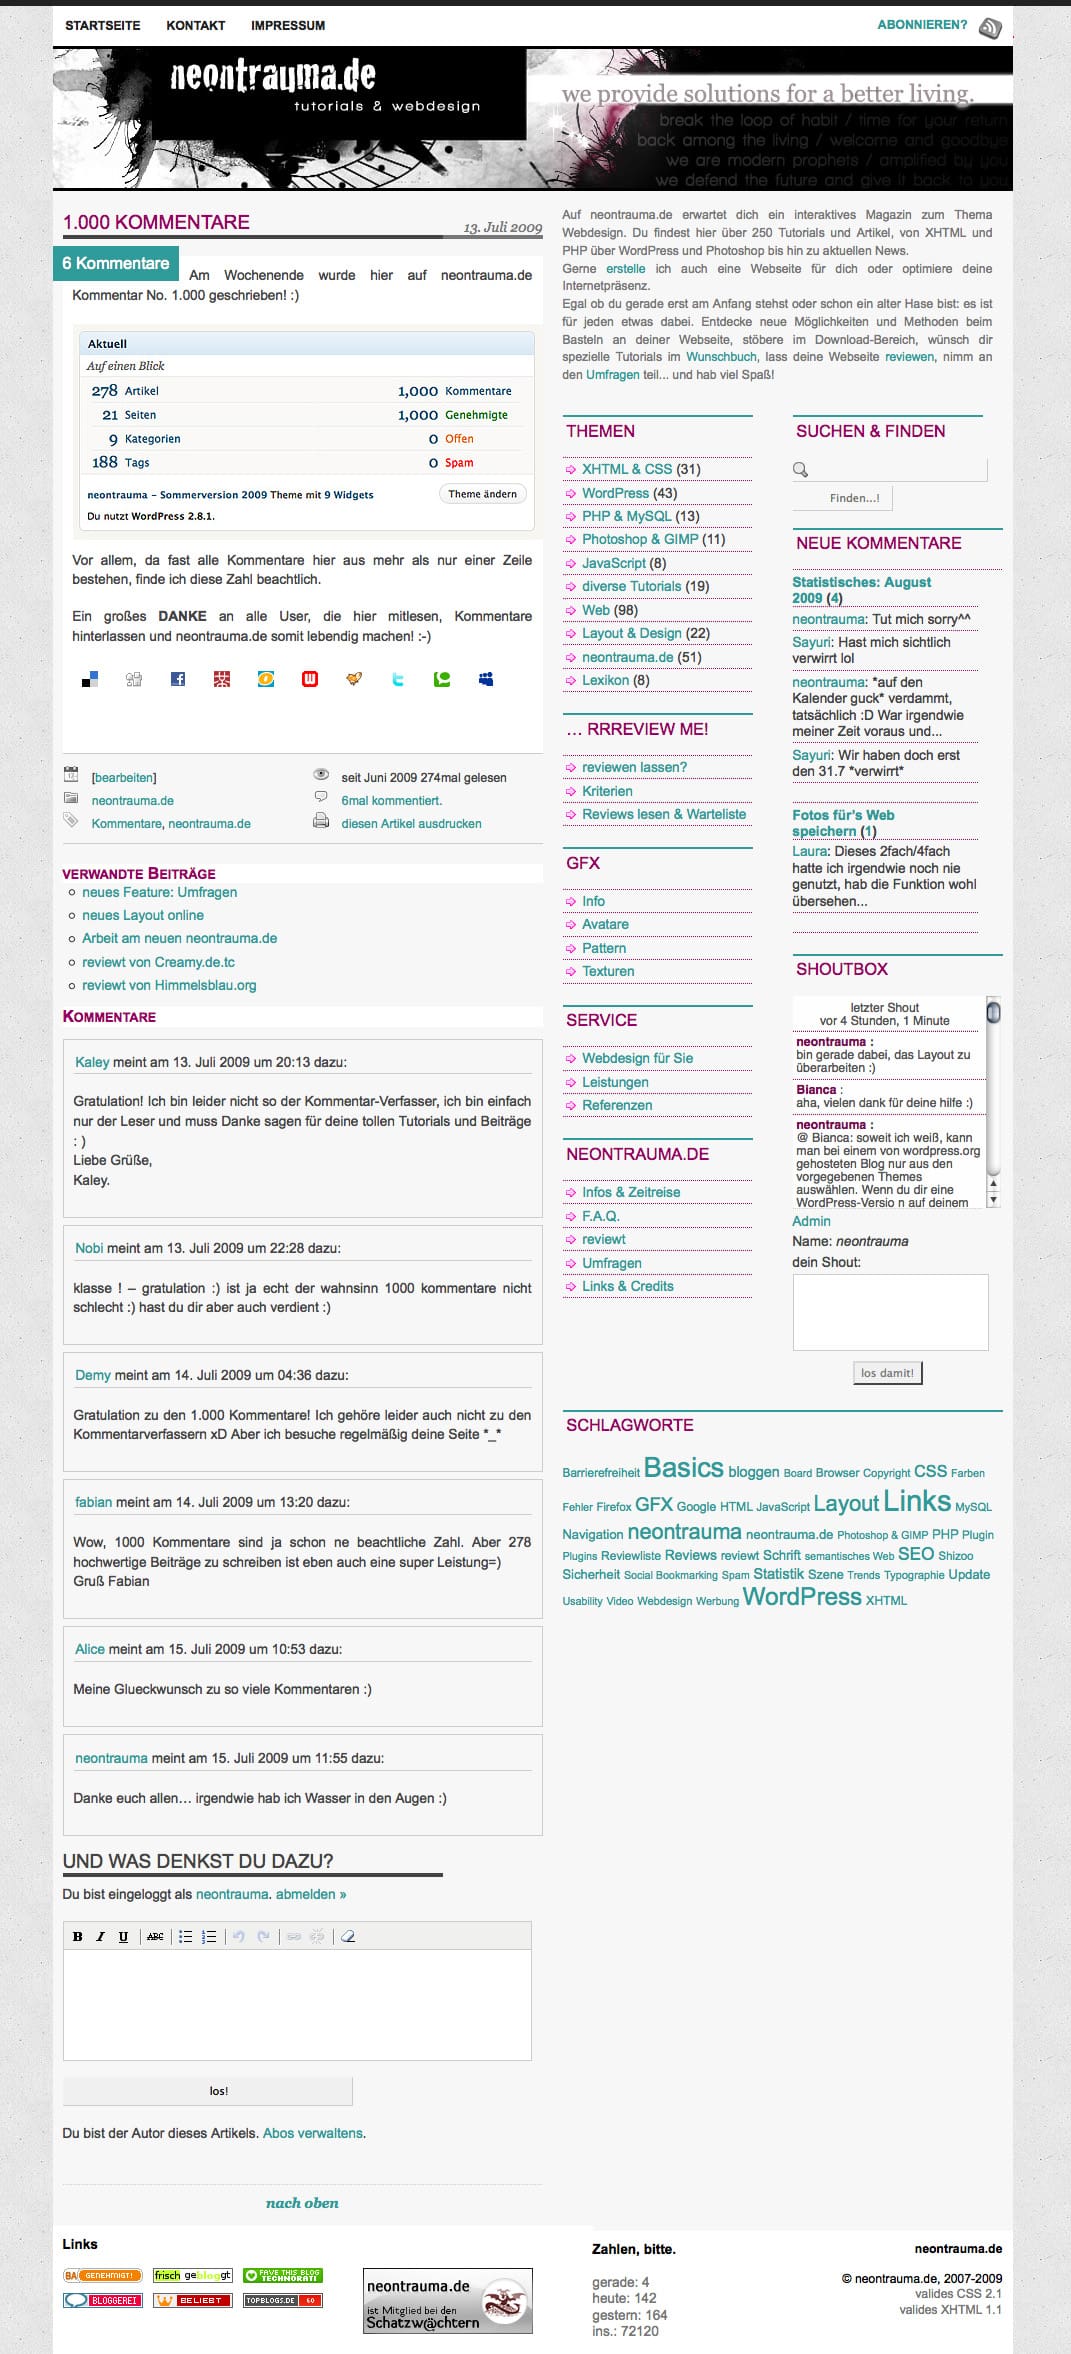 Screenshot von neontrauma.de im August 2009